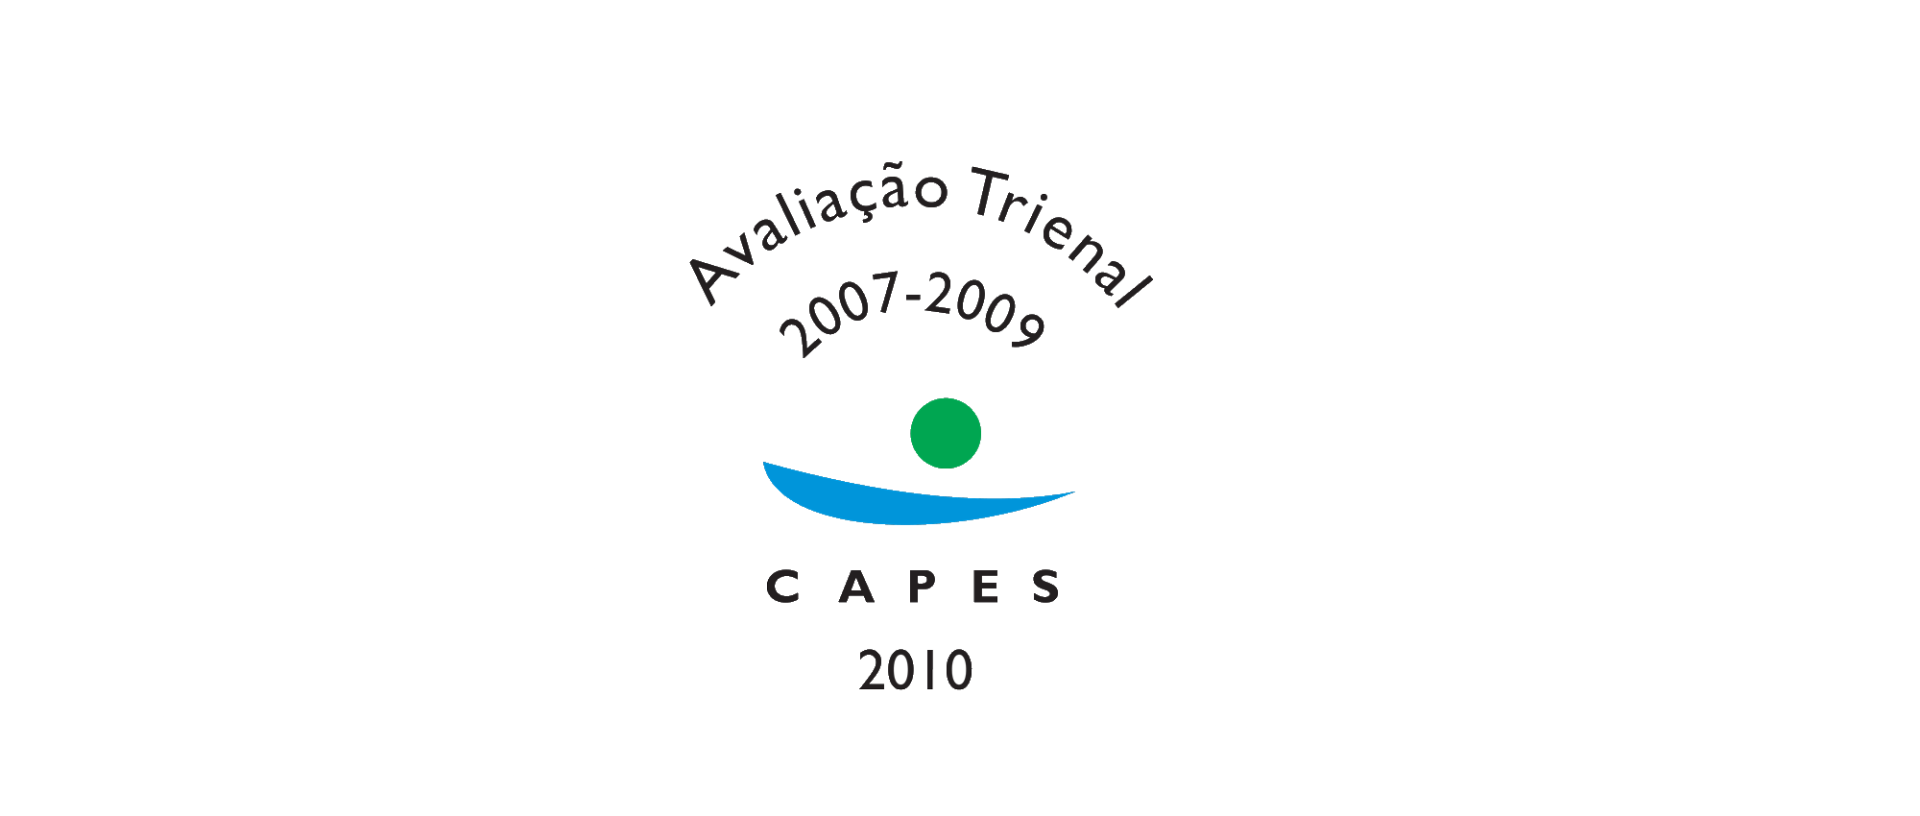 Banner full Avaliação Trienal 2007-2009.png